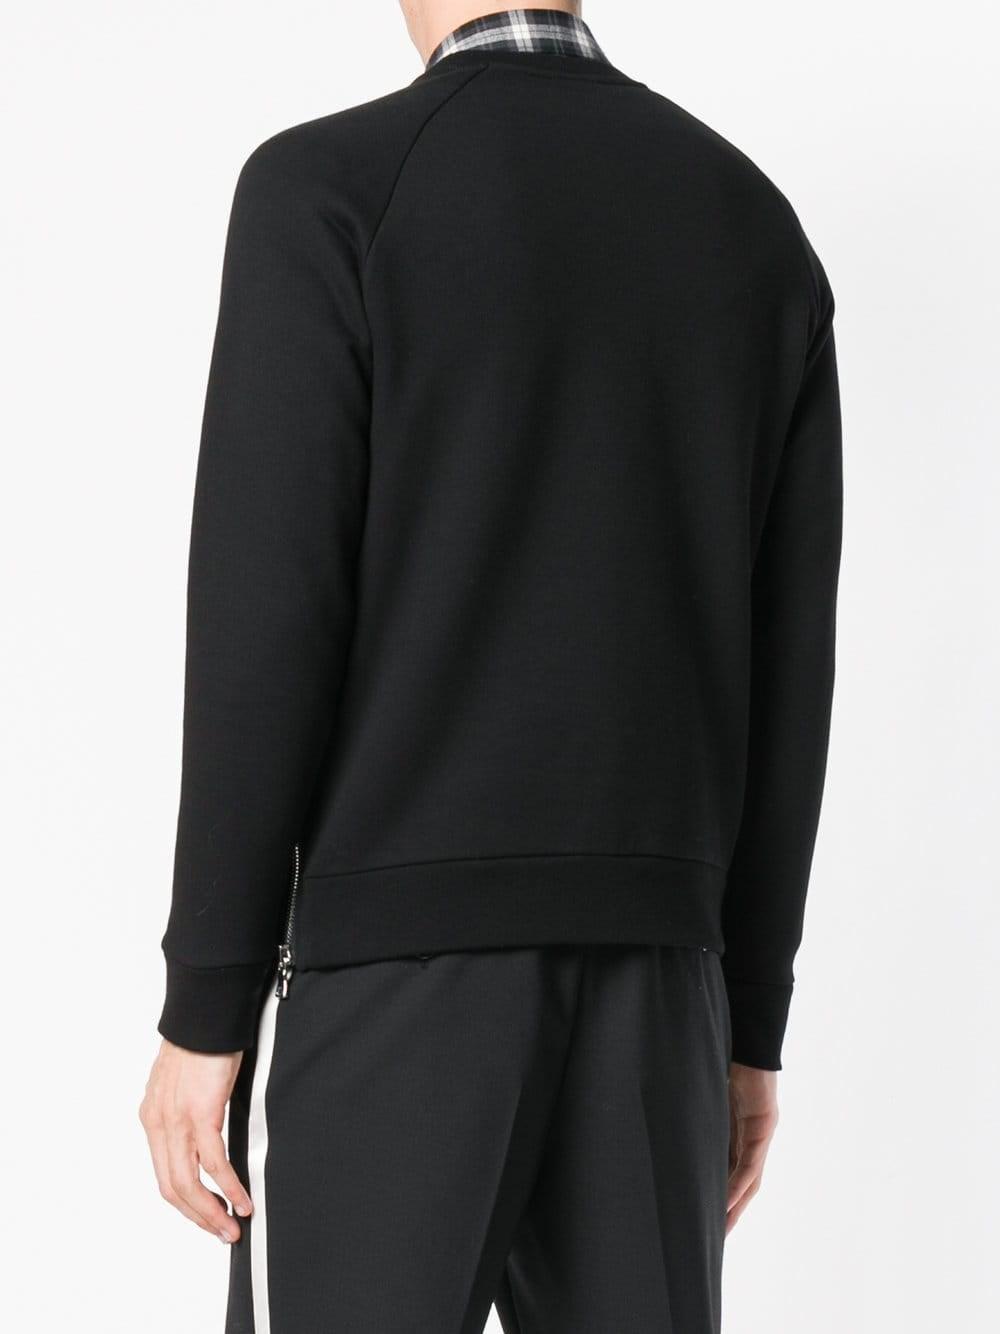 Balmain Sweaters & Knitwear W8h6326j190b 176 in Black for Men - Lyst